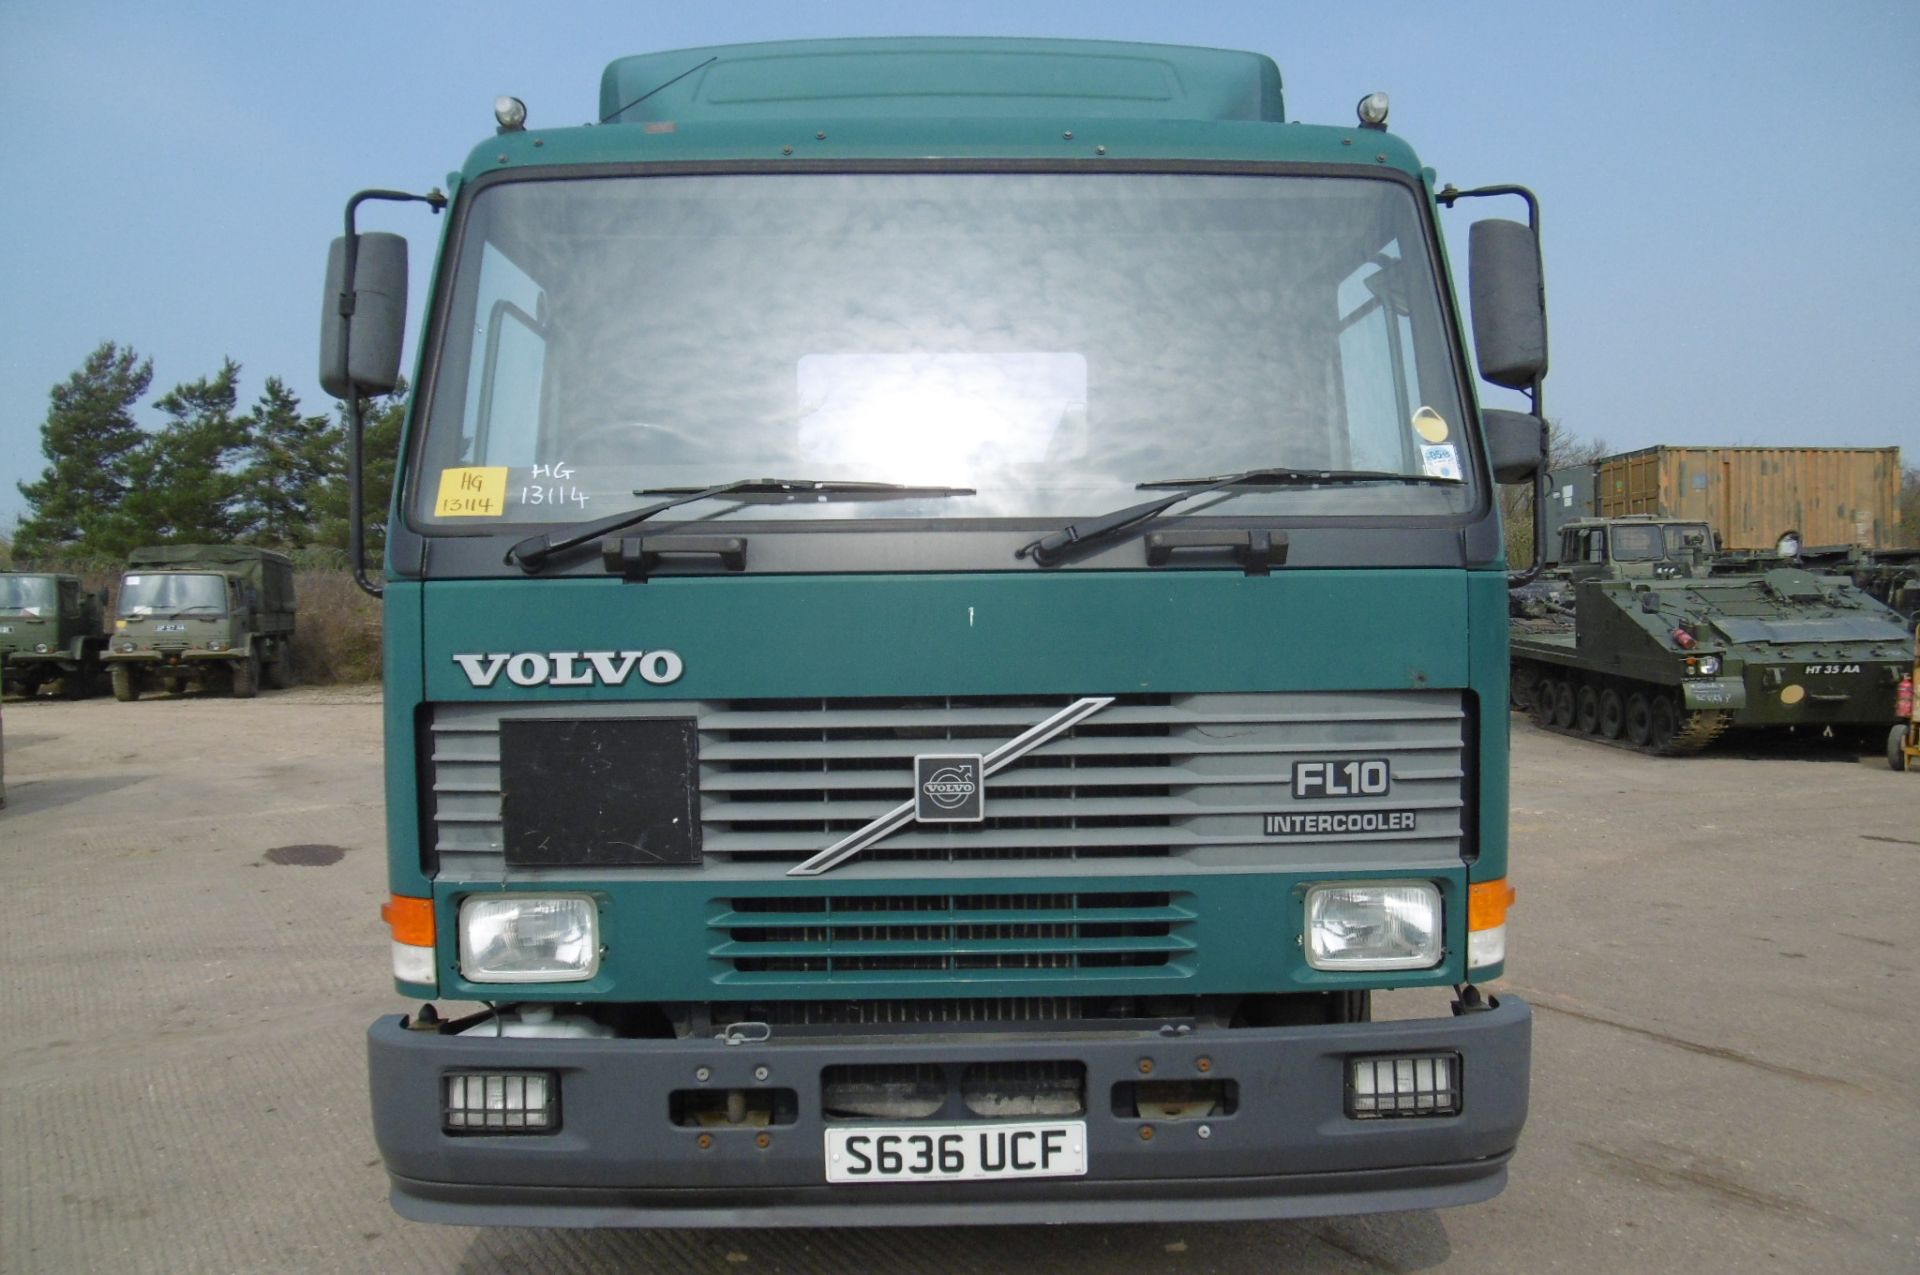 Volvo FL10 40ton 4x2 Tractor unit 24,814 km - Image 2 of 17